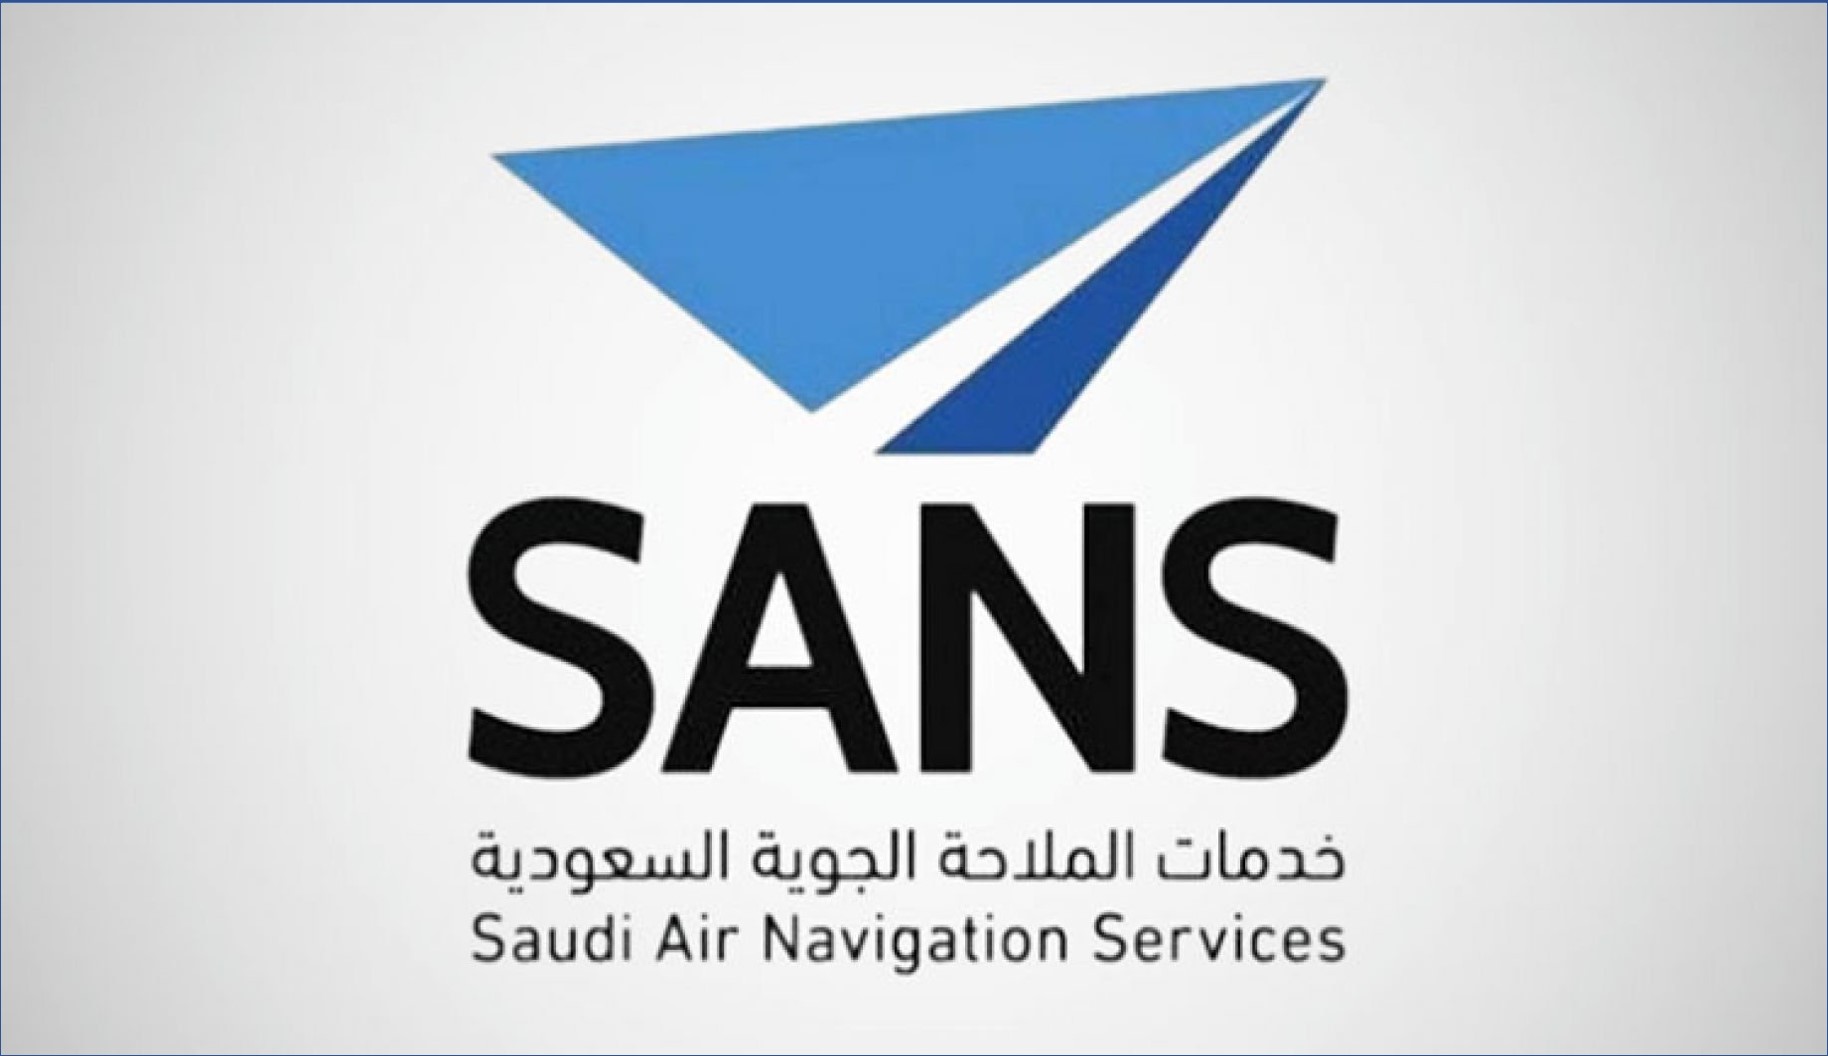 الملاحة الجوية السعودية تقدم برنامج تدريب وتوظيف في المراقبة